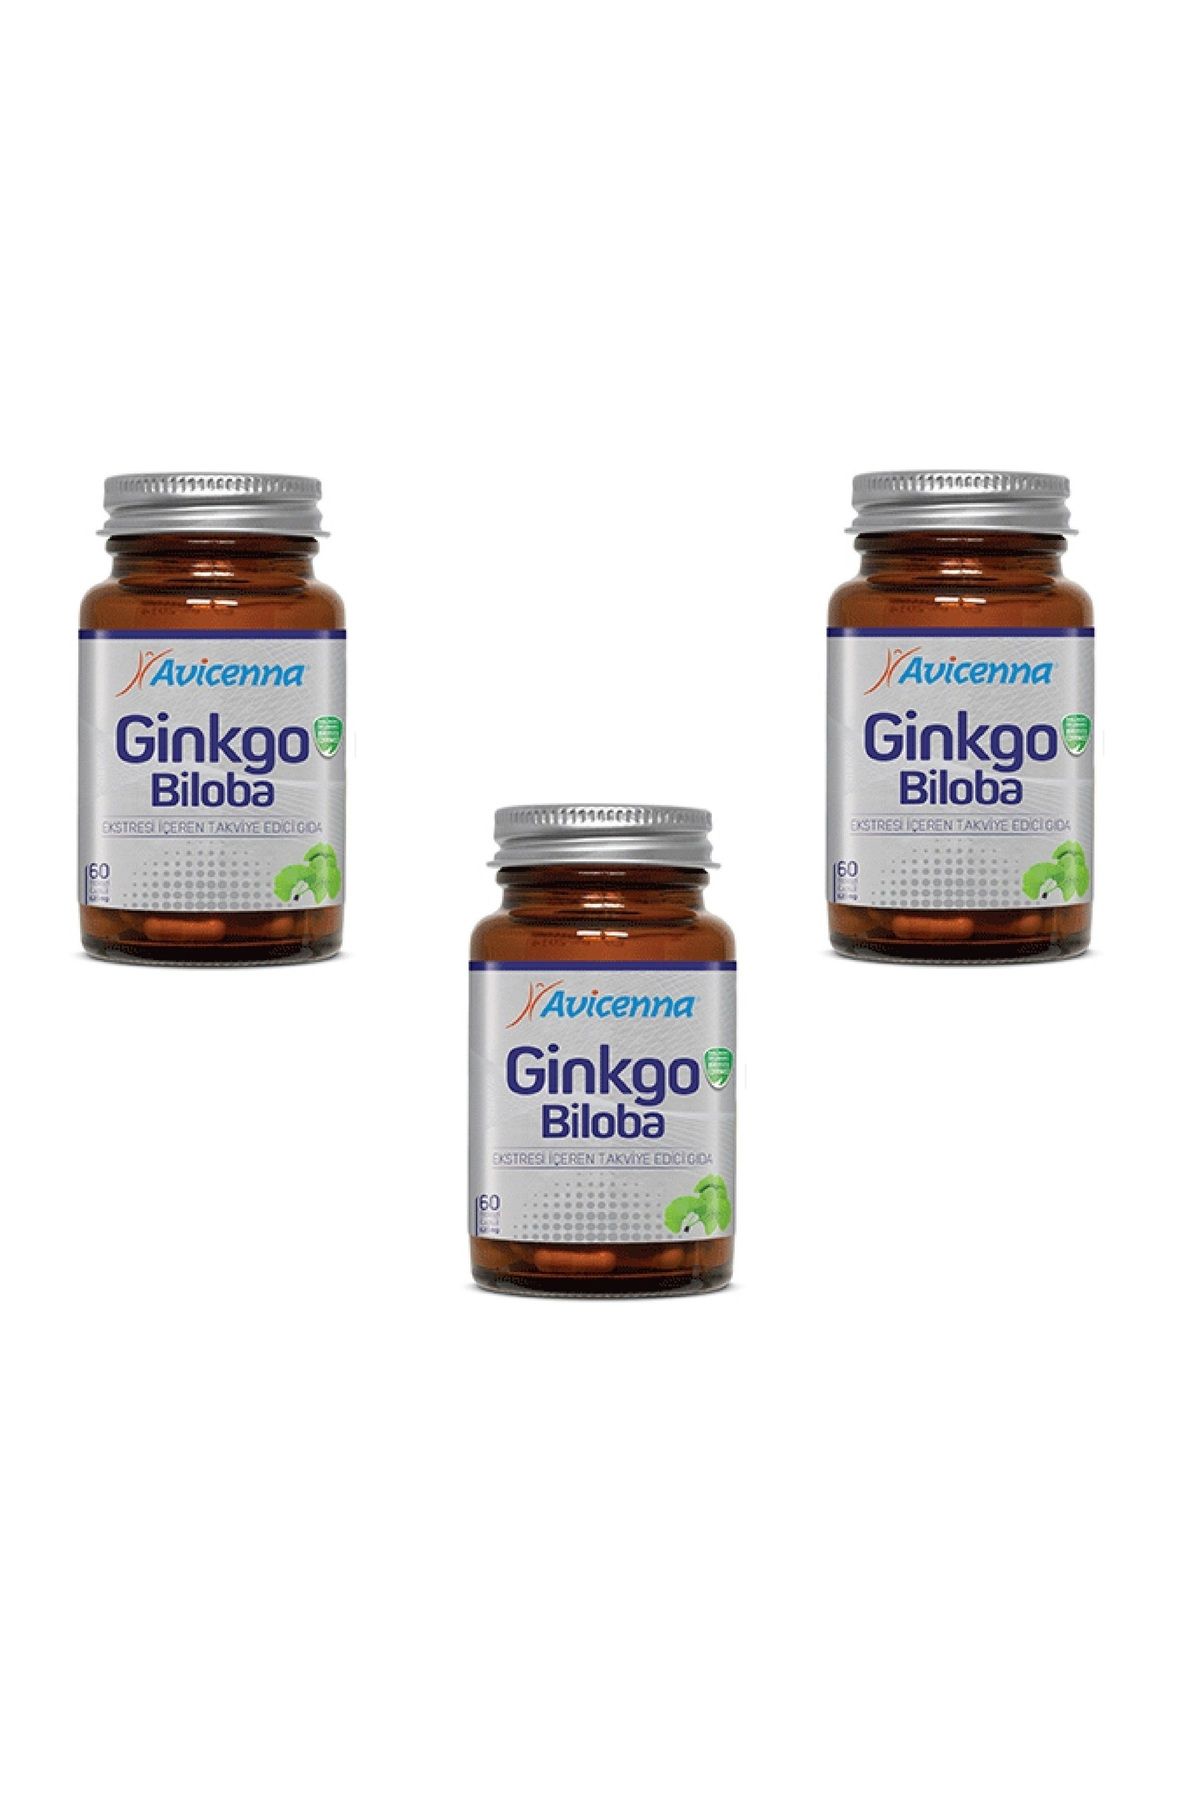 Avicenna Ginkgo Biloba- Ginkgo Yaprağı Içeren Takviye Edici Gıda - 60 Bitkisel Kapsül 3 Adet